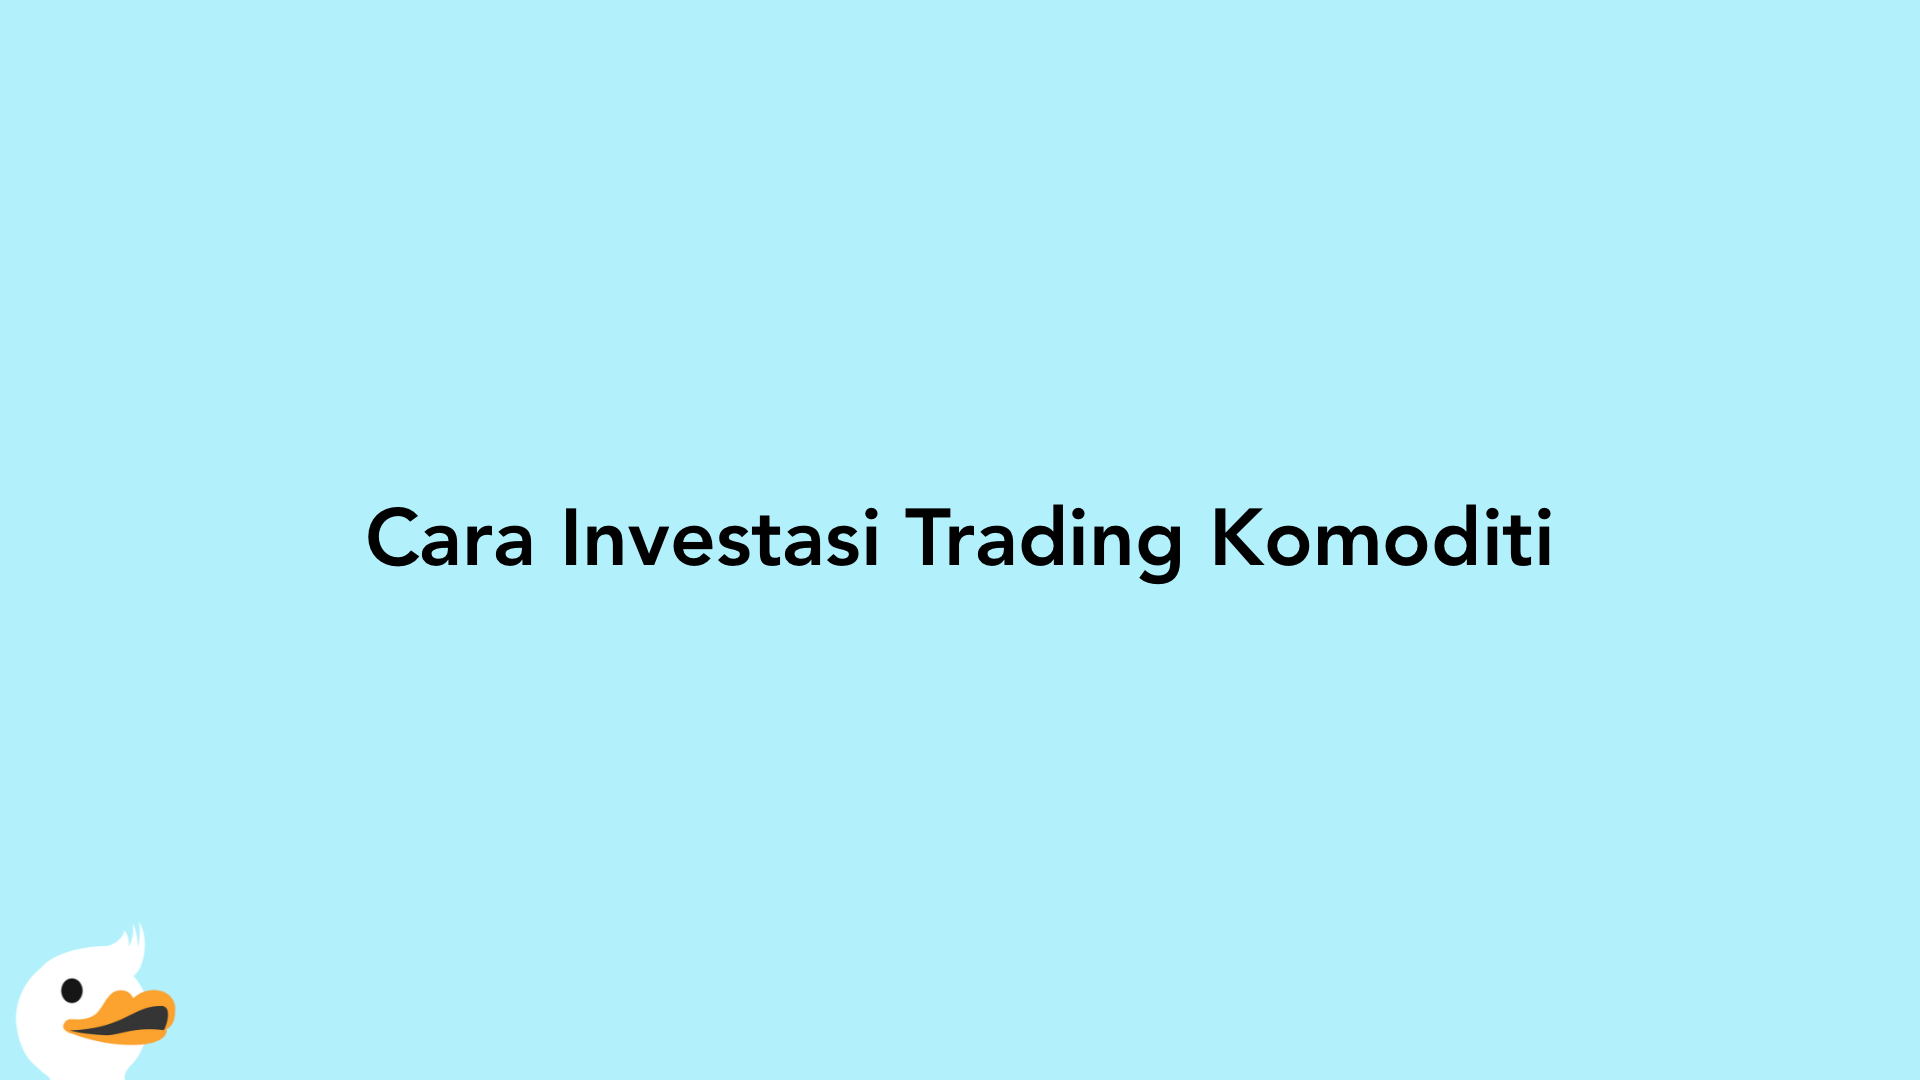 Cara Investasi Trading Komoditi